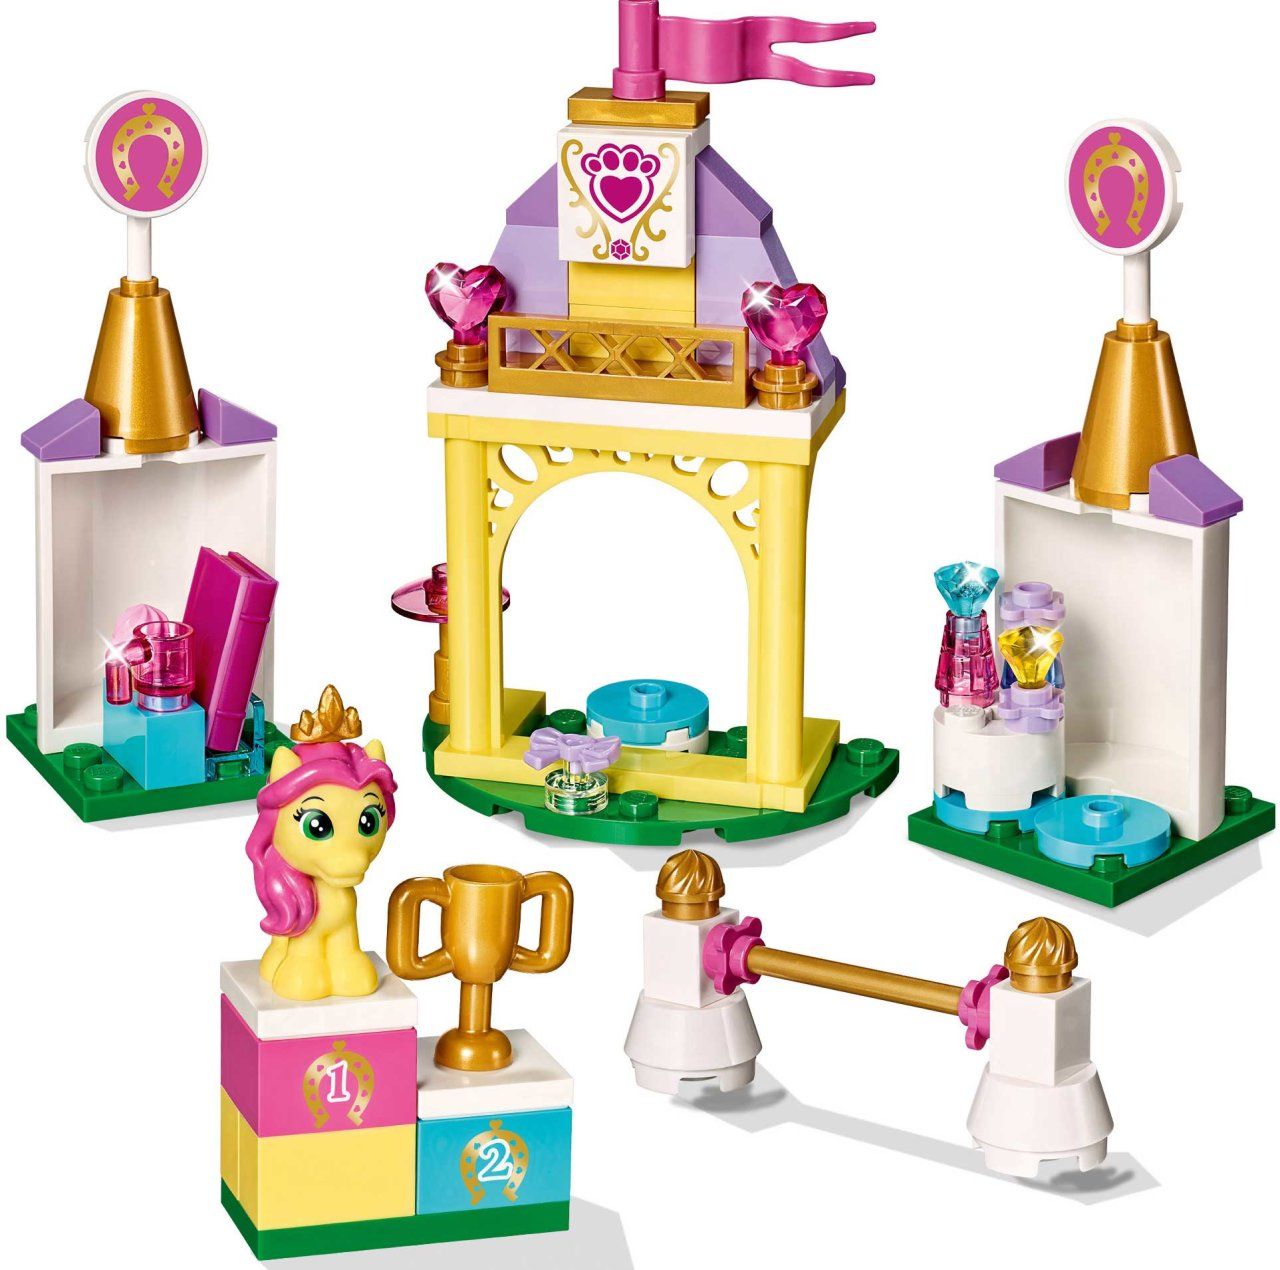 Lego Disney Princesses Миниатюрная королевская конюшня